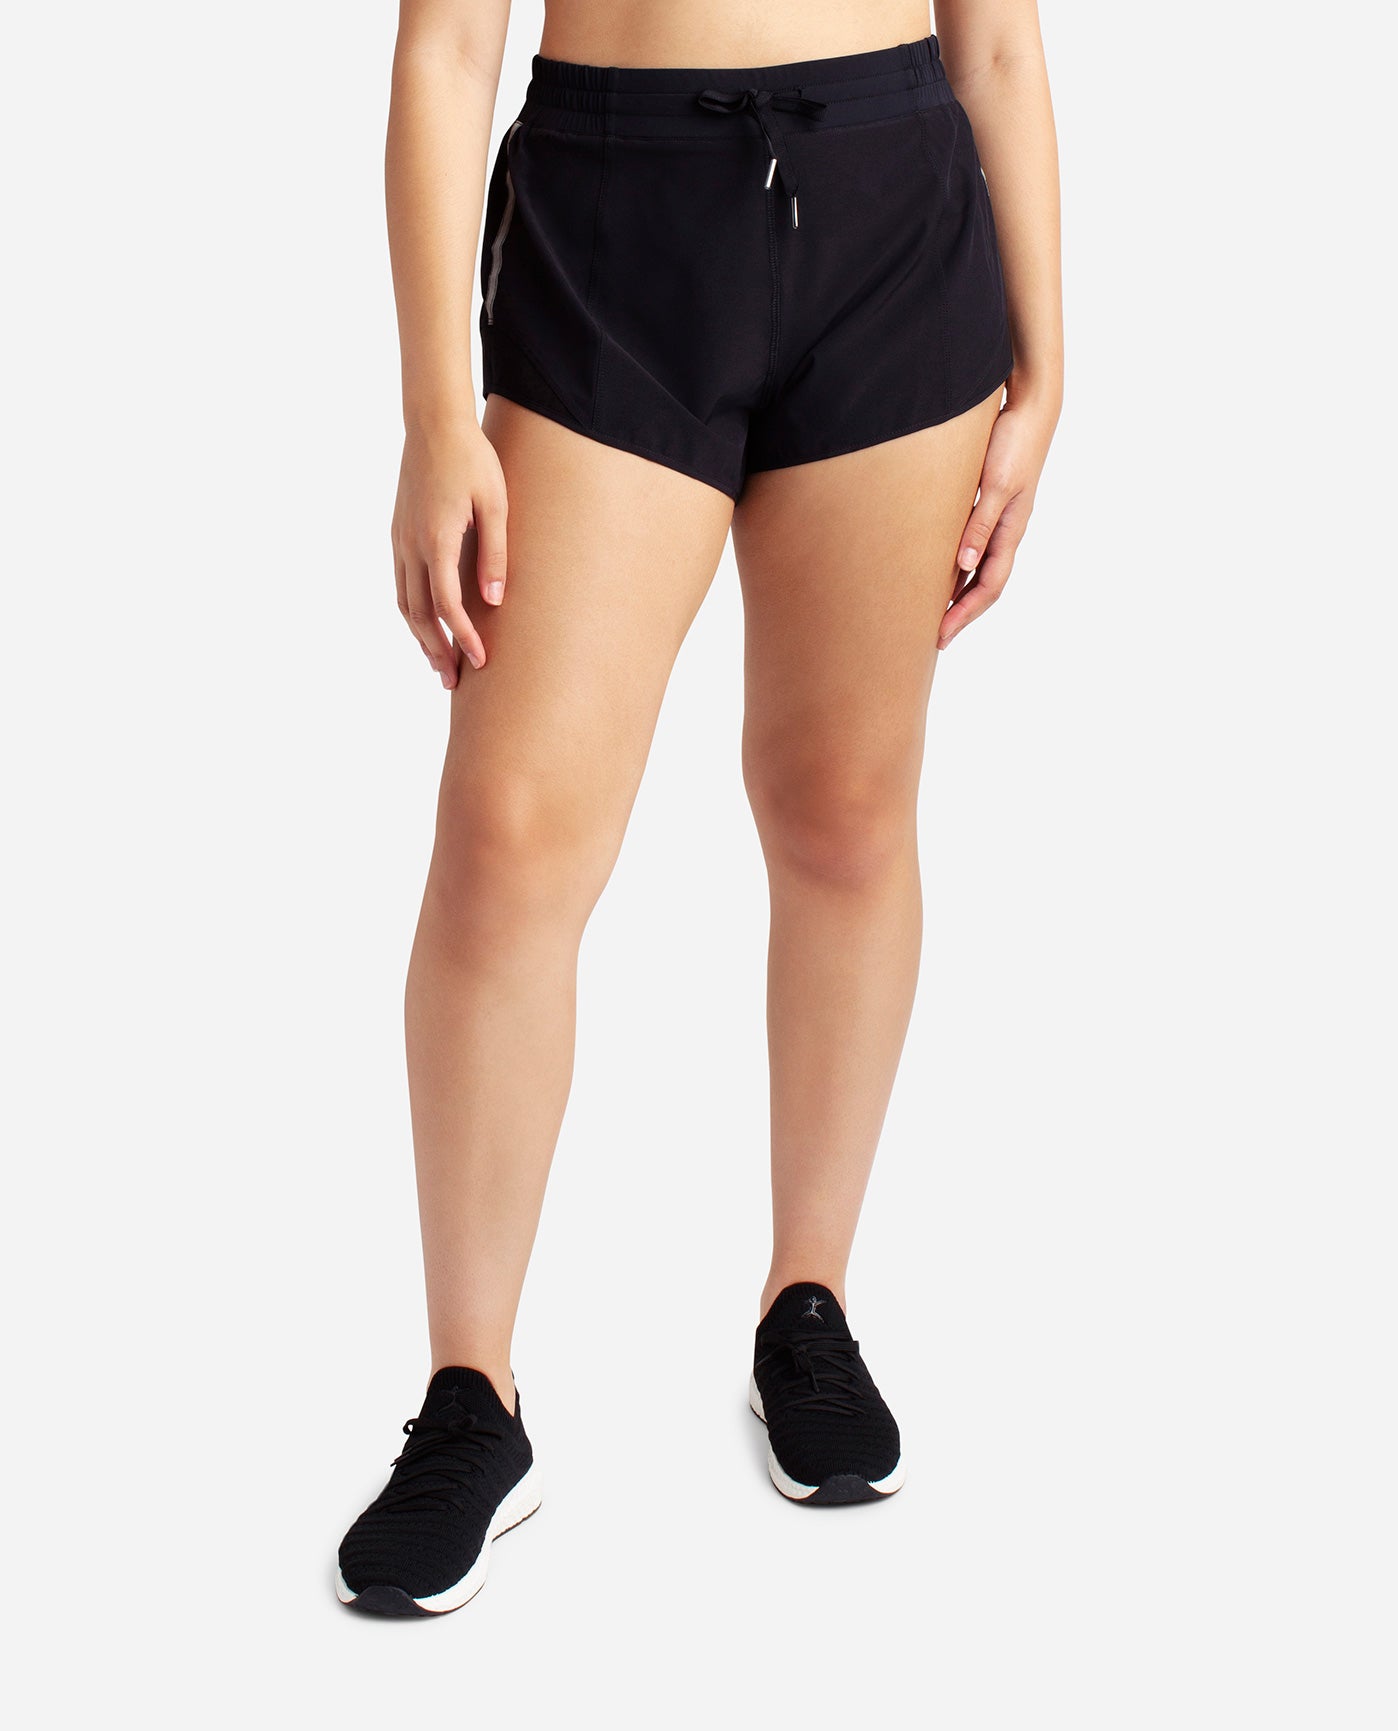 Danskin now large 12-14 womens shorts athletic wear built in under wear  black